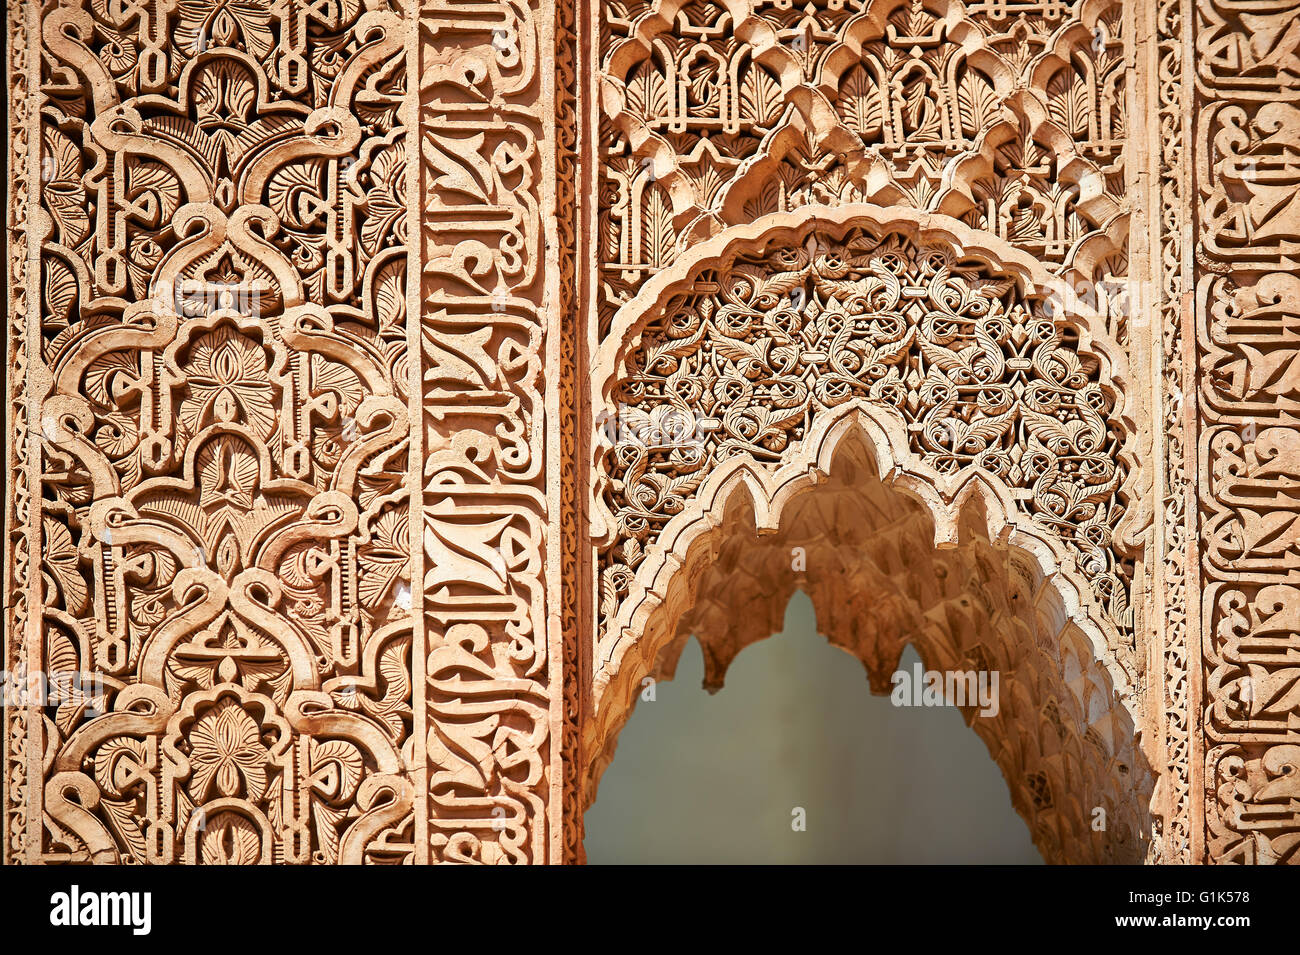 Die Arabeske Mocarabe Stuckarbeiten, 16. Jahrhundert Saadian Gräber Mausoleum, Marrakesch (Marrakech), Marokko Stockfoto